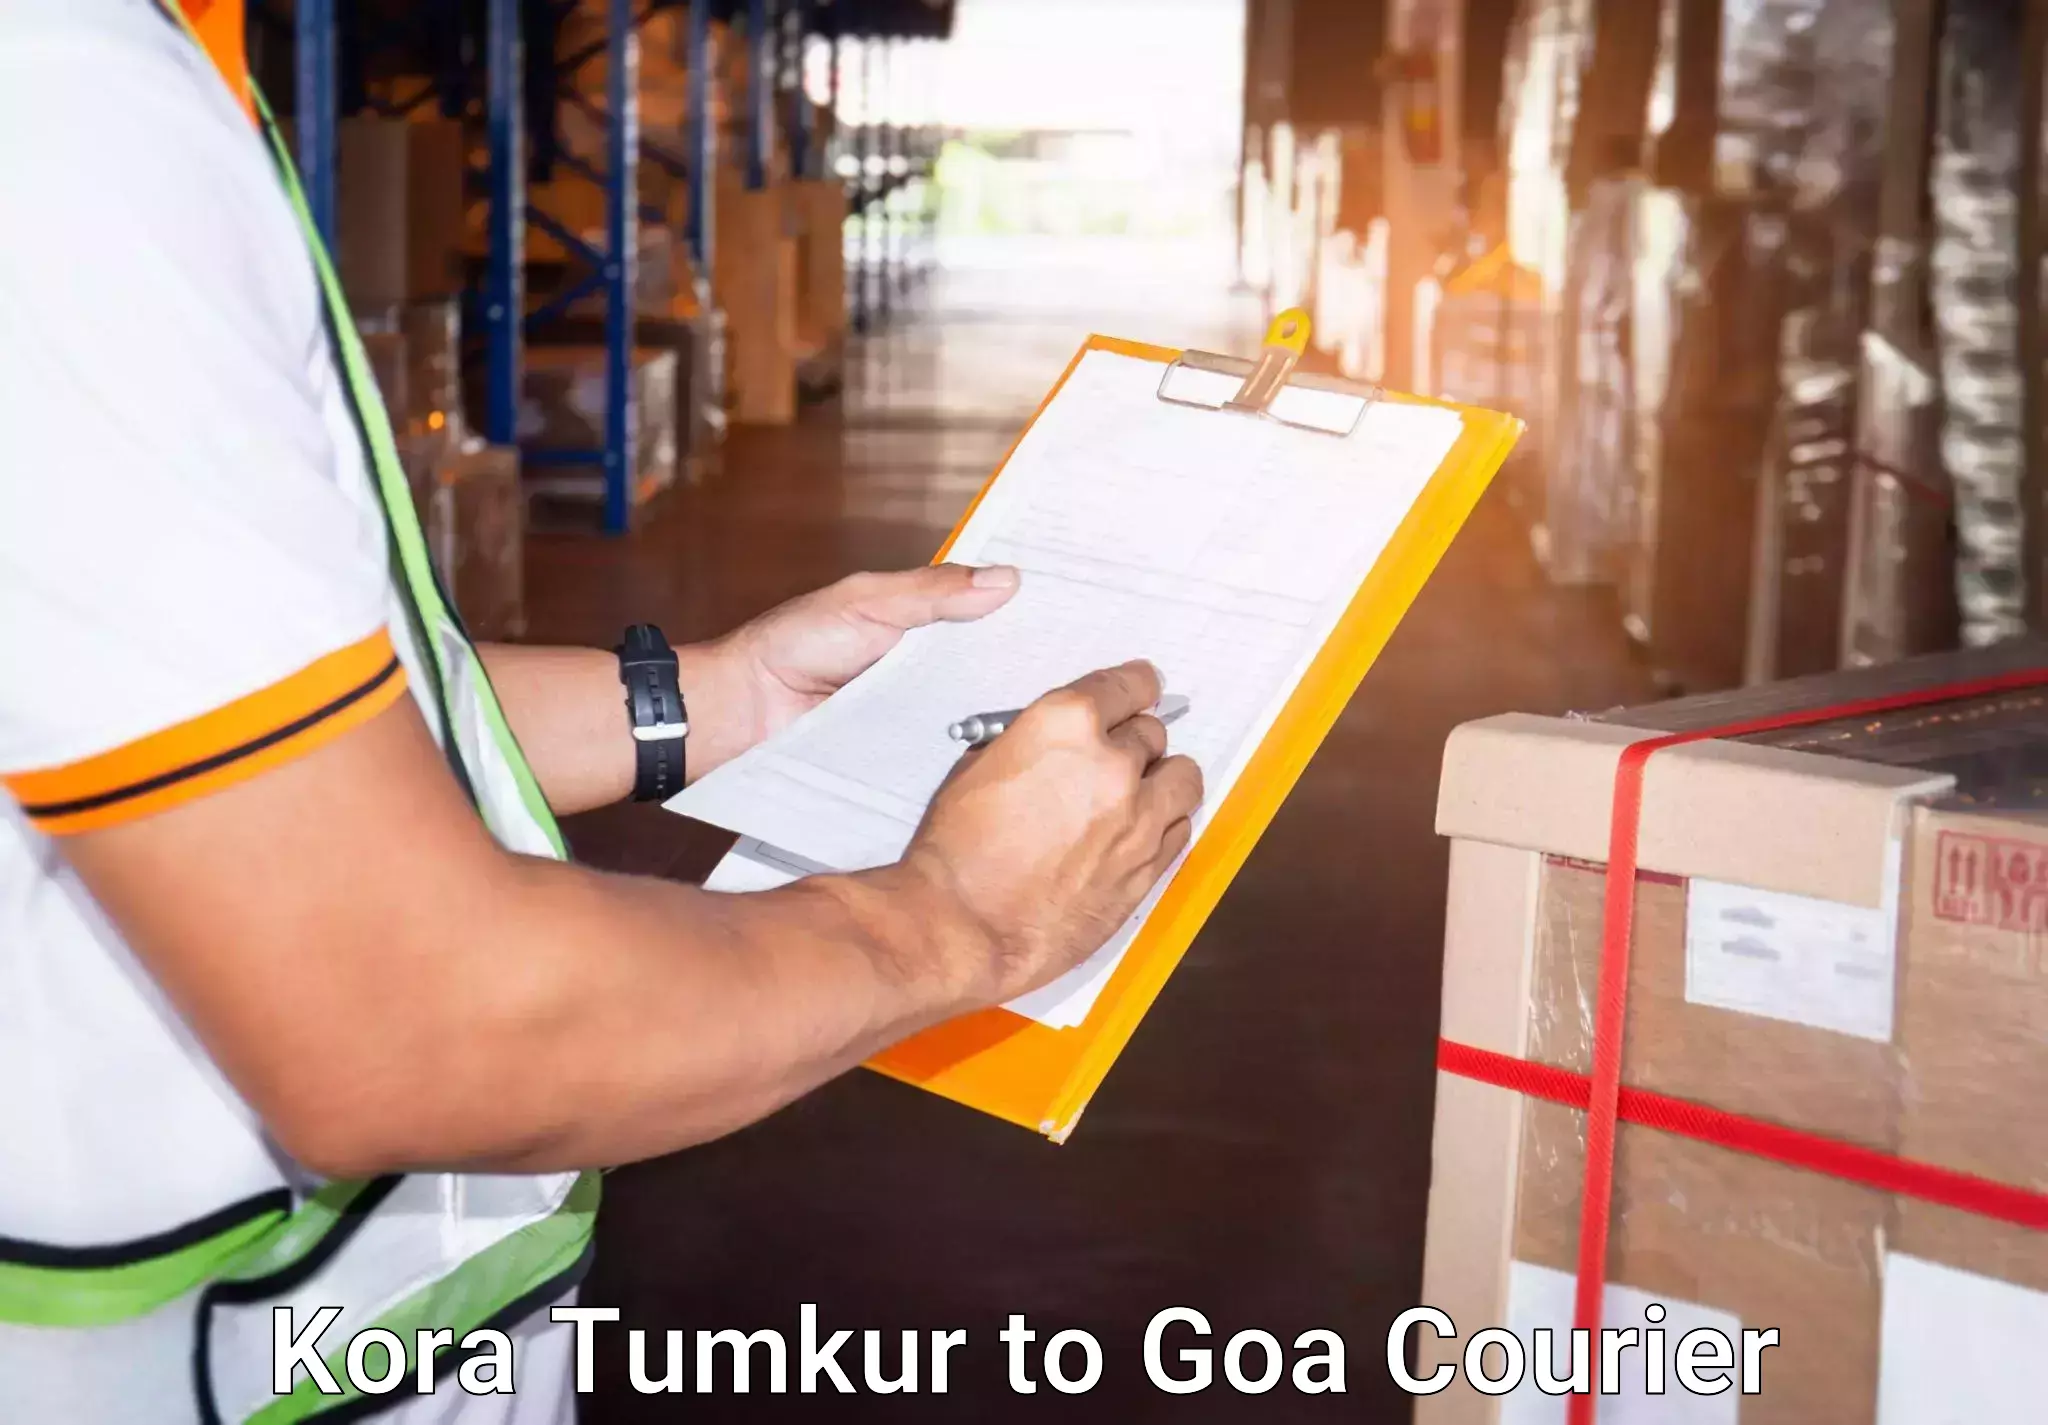 Same day luggage service Kora Tumkur to IIT Goa